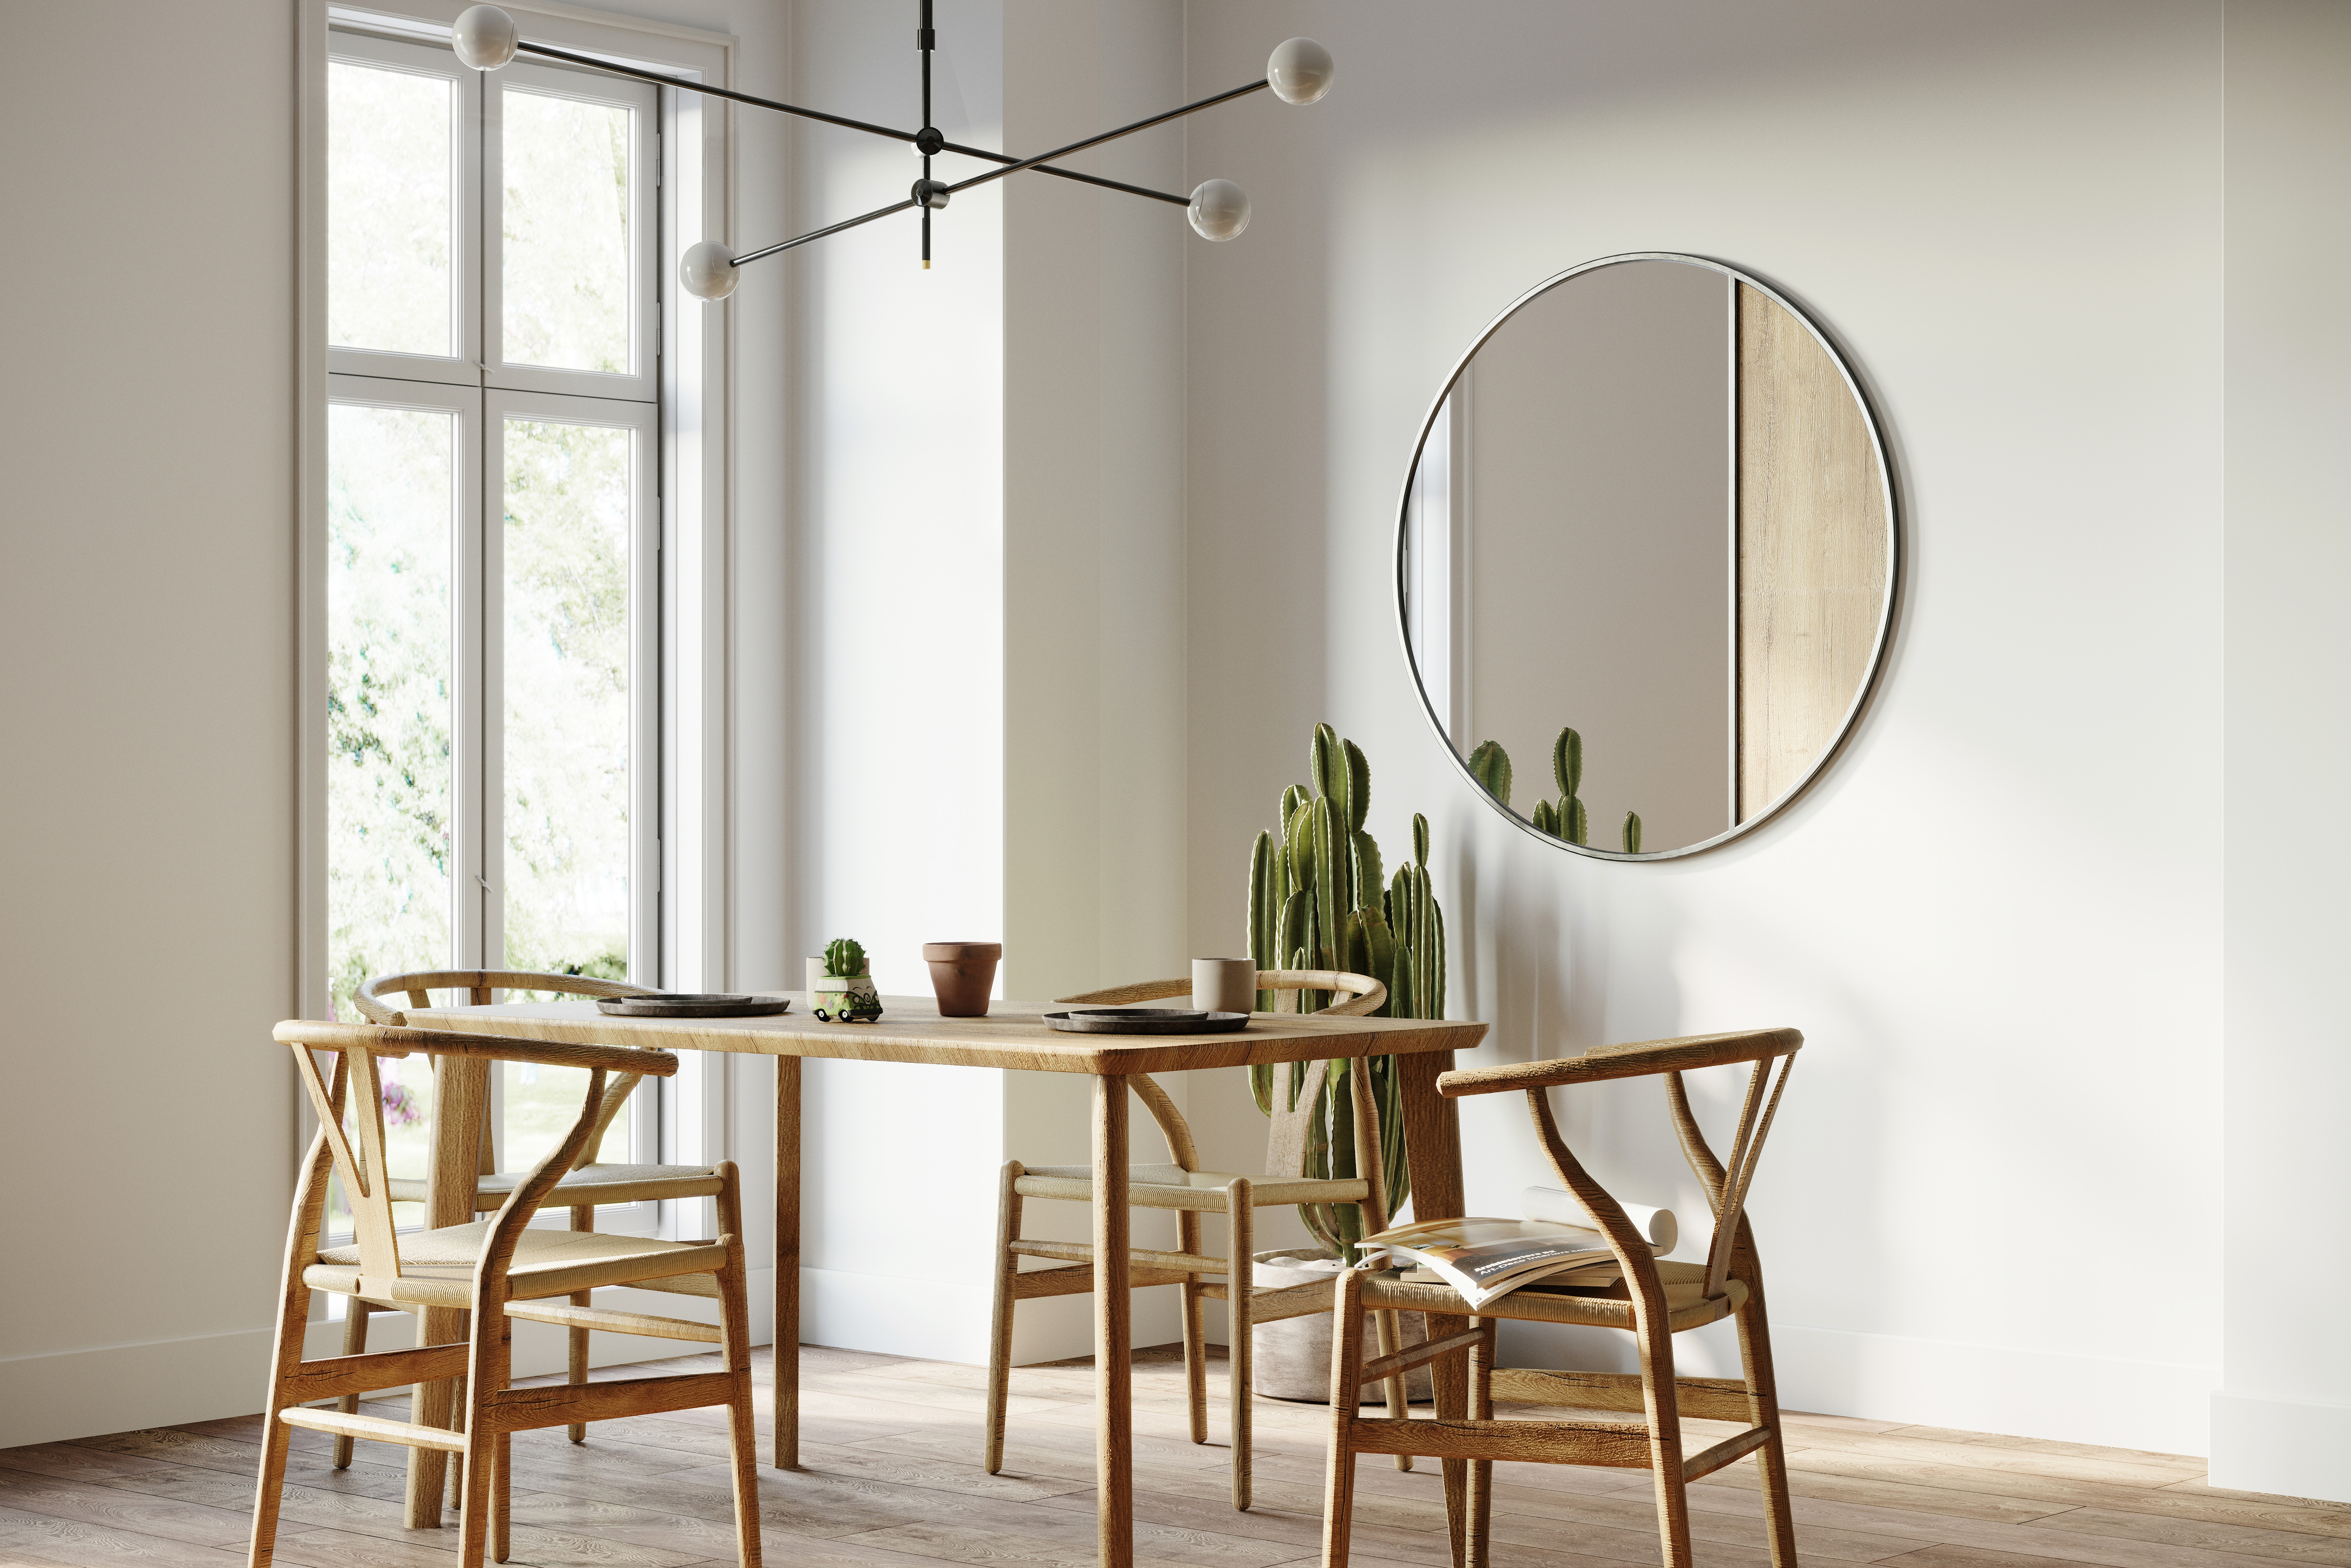 Une salle à manger moderne aux murs peints en blanc, stylisée avec une table et chaises minimalistes, un miroir rond et un luminaire simple